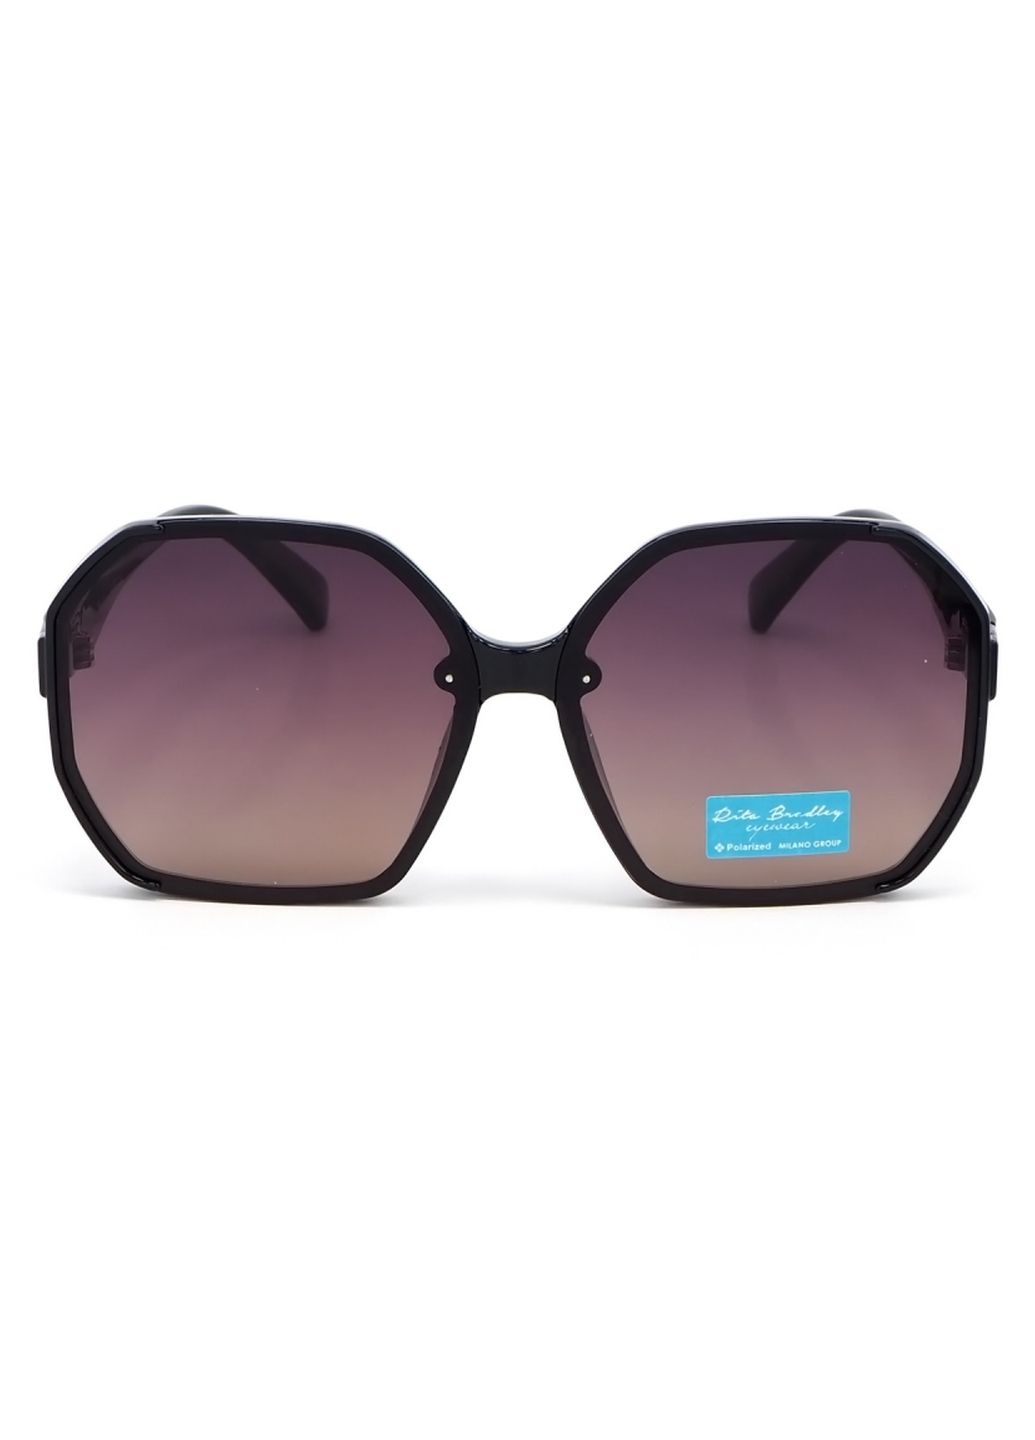 Купить Женские солнцезащитные очки Rita Bradley с поляризацией RB729 112071 в интернет-магазине